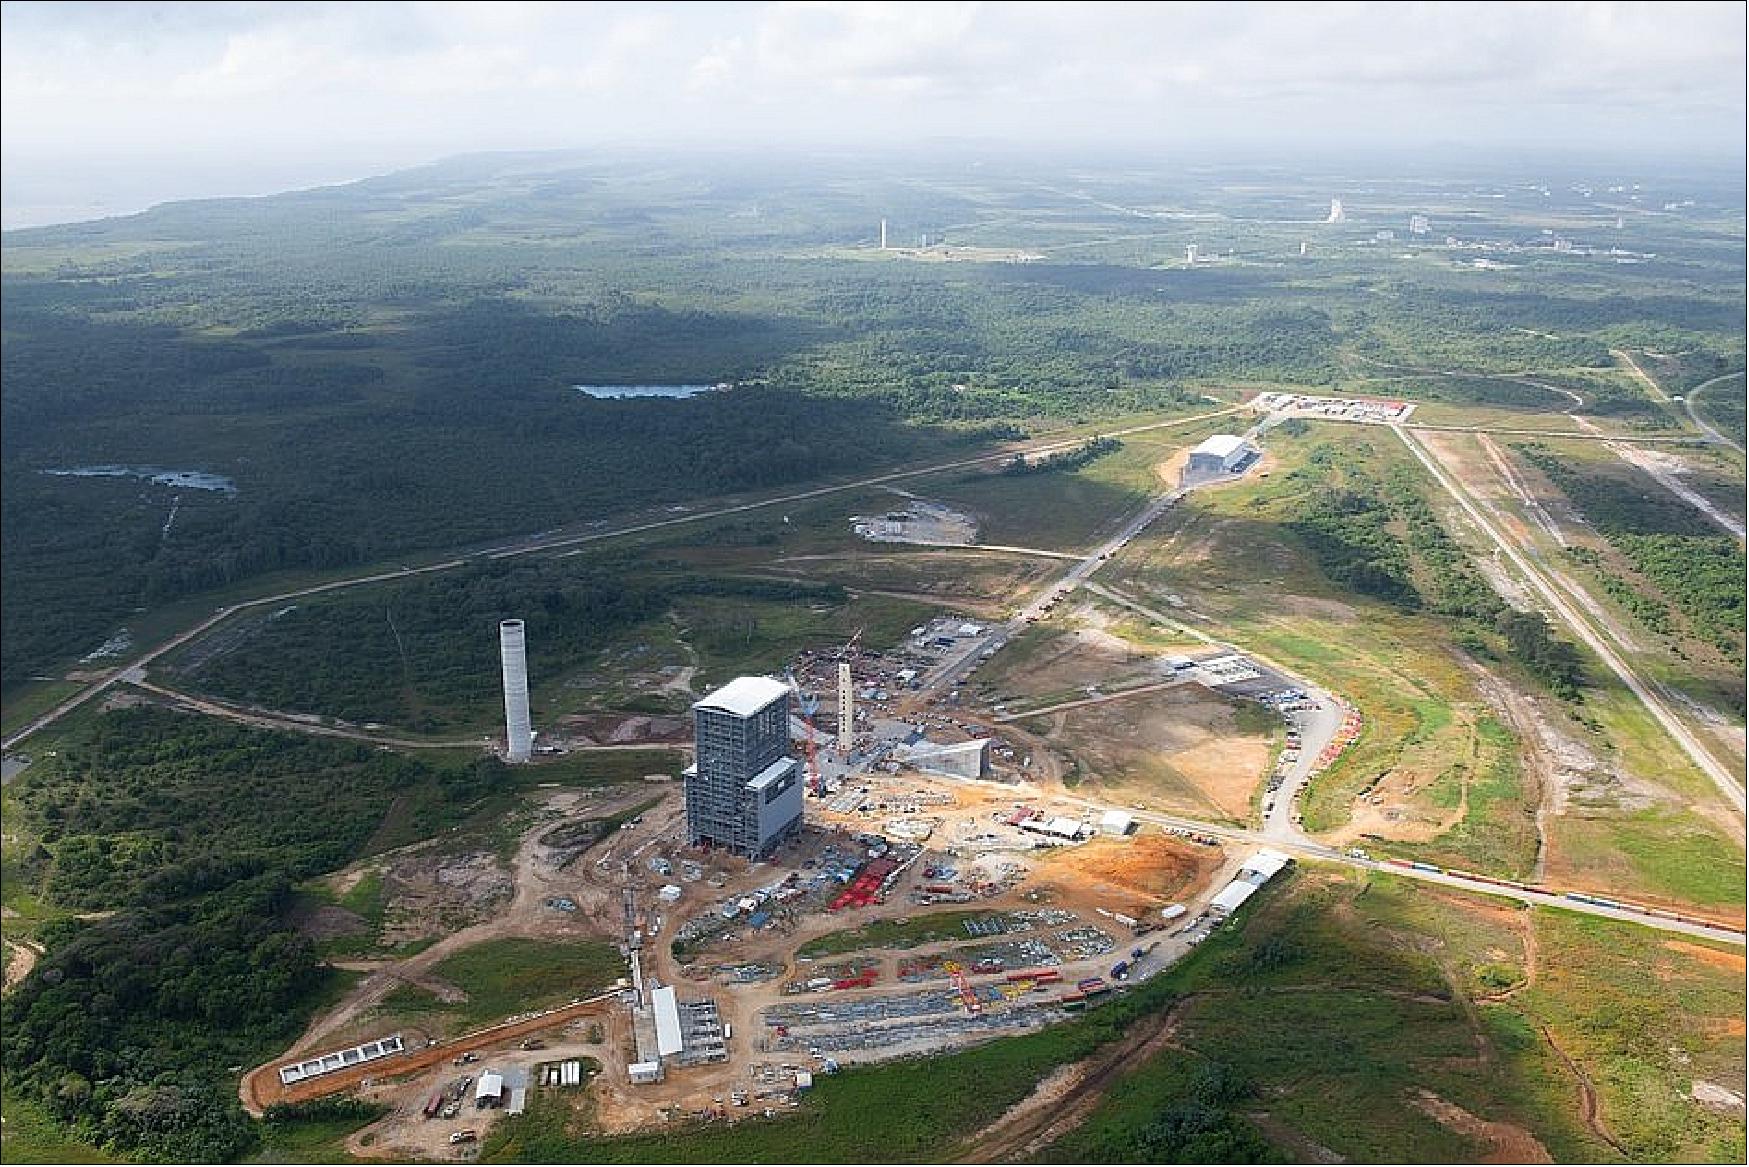 Figure 69: CSG - ELA-4 construction site for Ariane 6 (image credit: ESA, S. Corvaja)